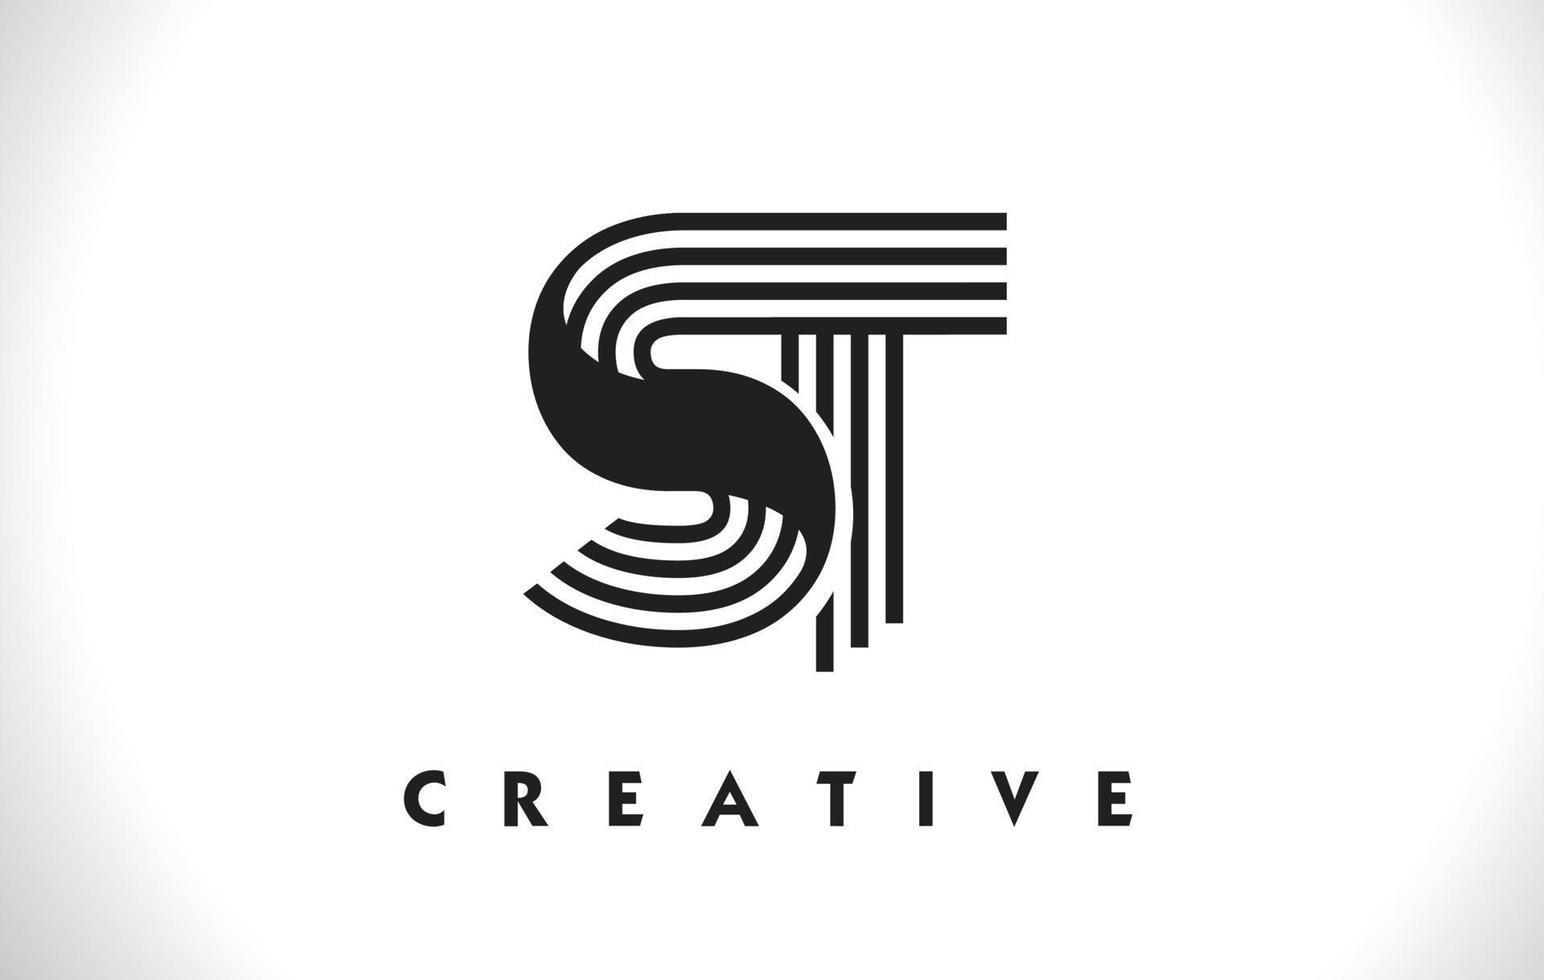 ST Logo Letter With Black Lines Design. Line Letter Vector Illustration